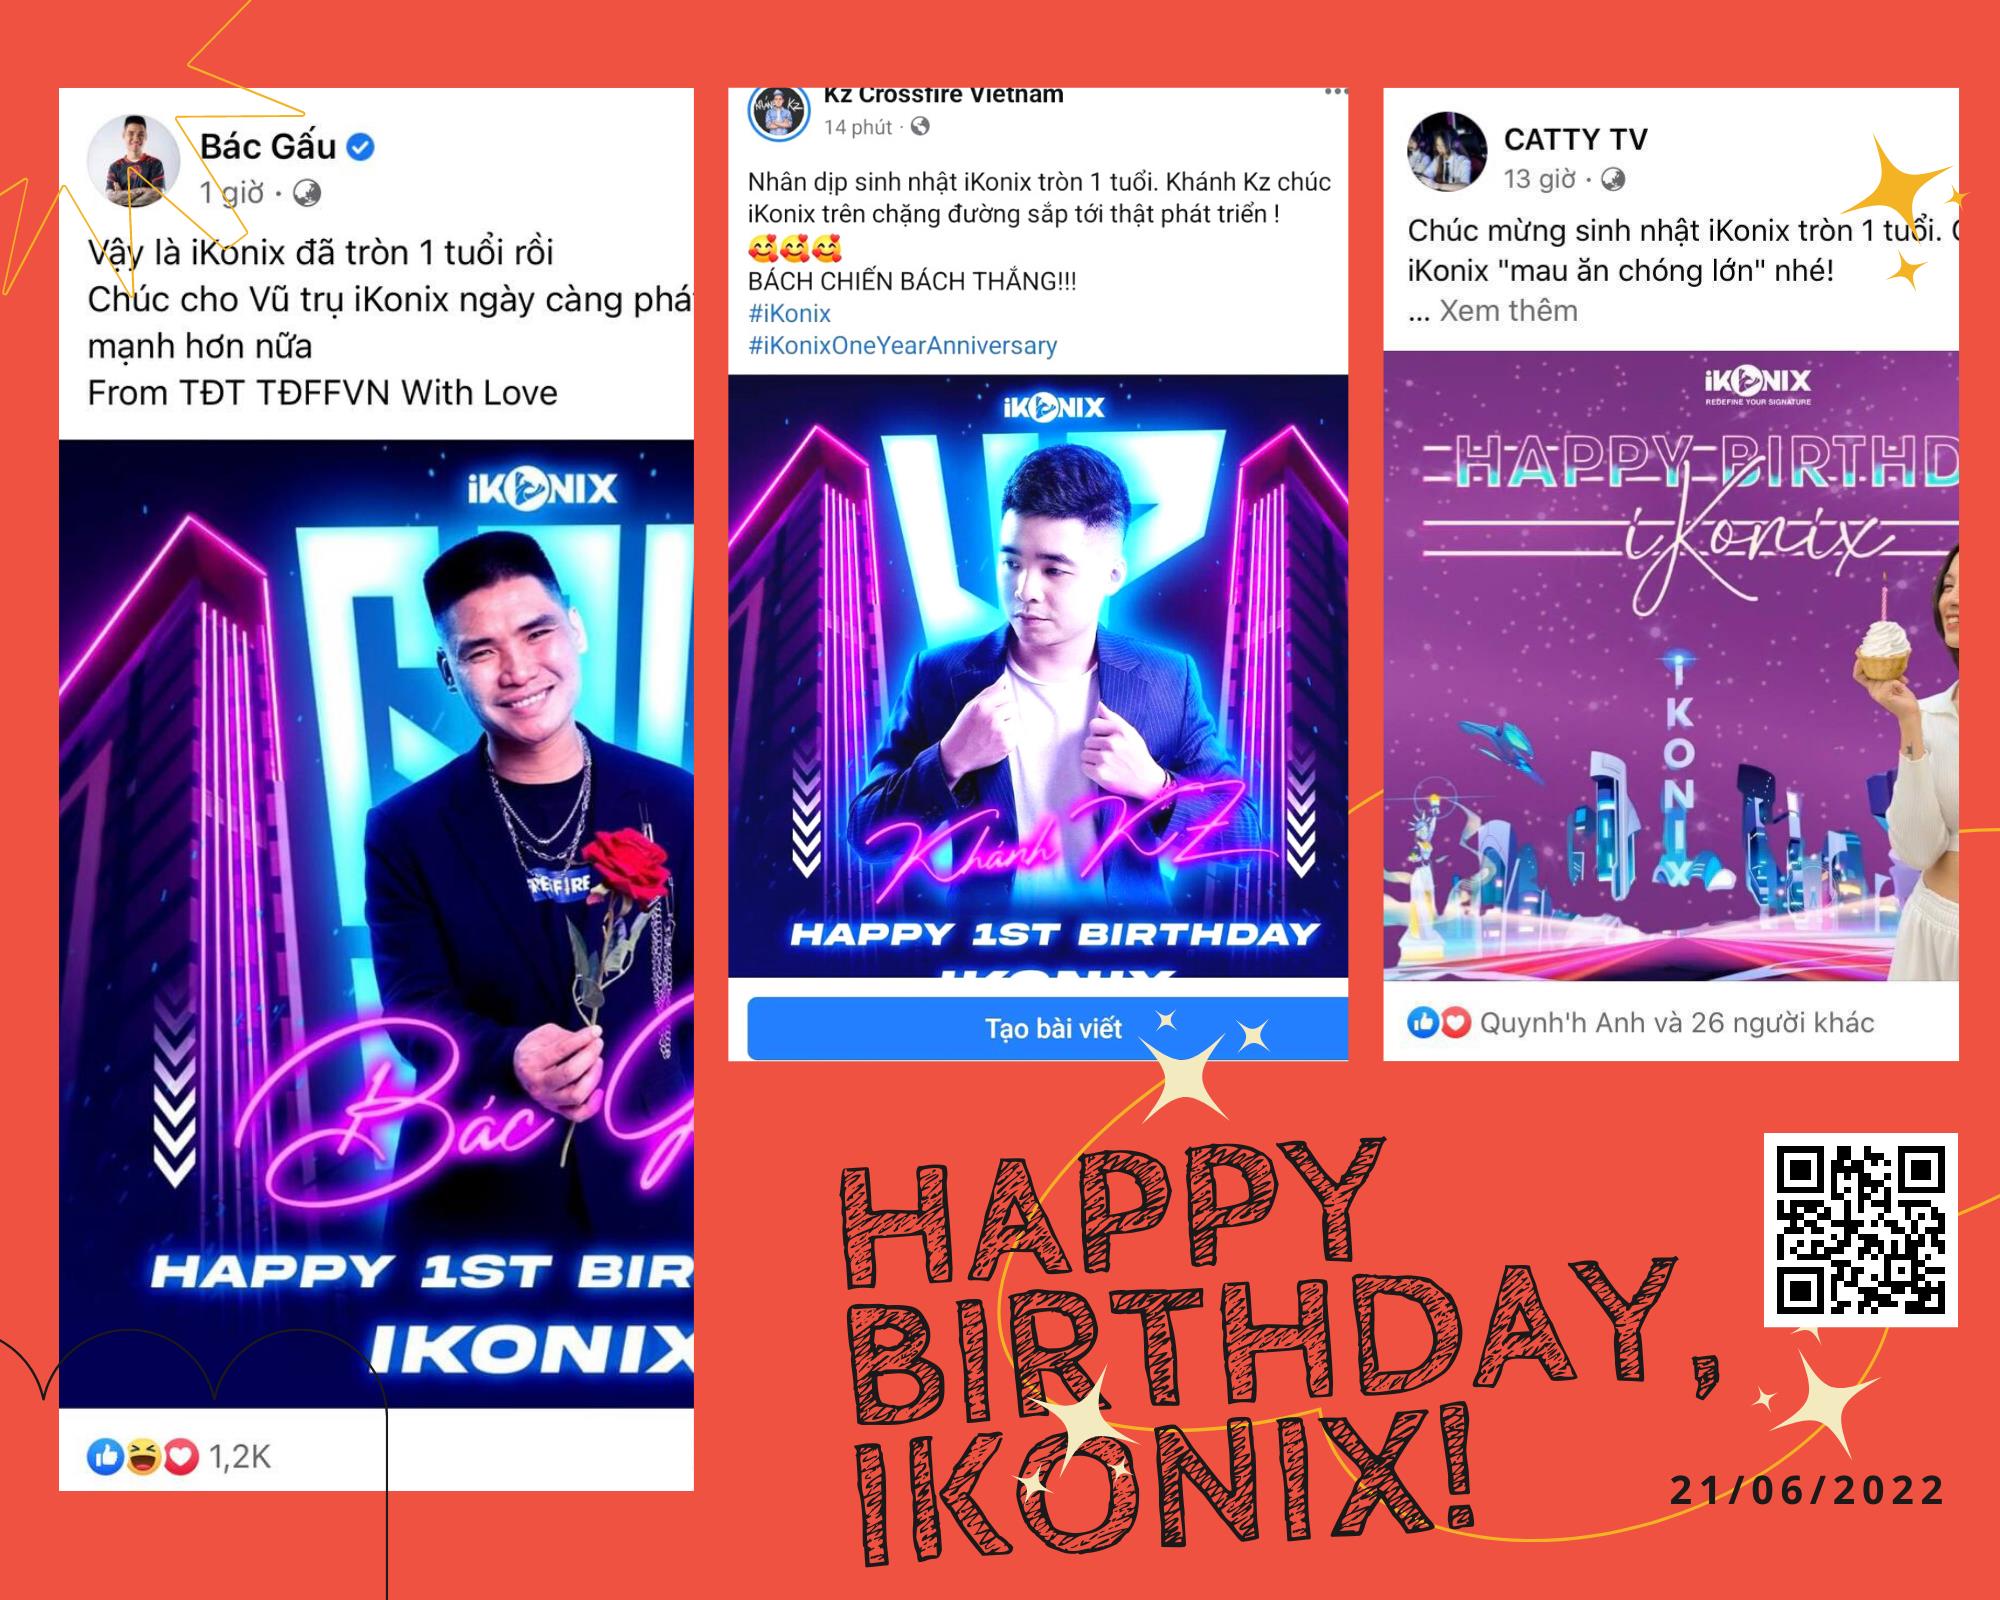 Dàn KOLs đình đám gửi lời chúc mừng sinh nhật iKonix - Ảnh 1.